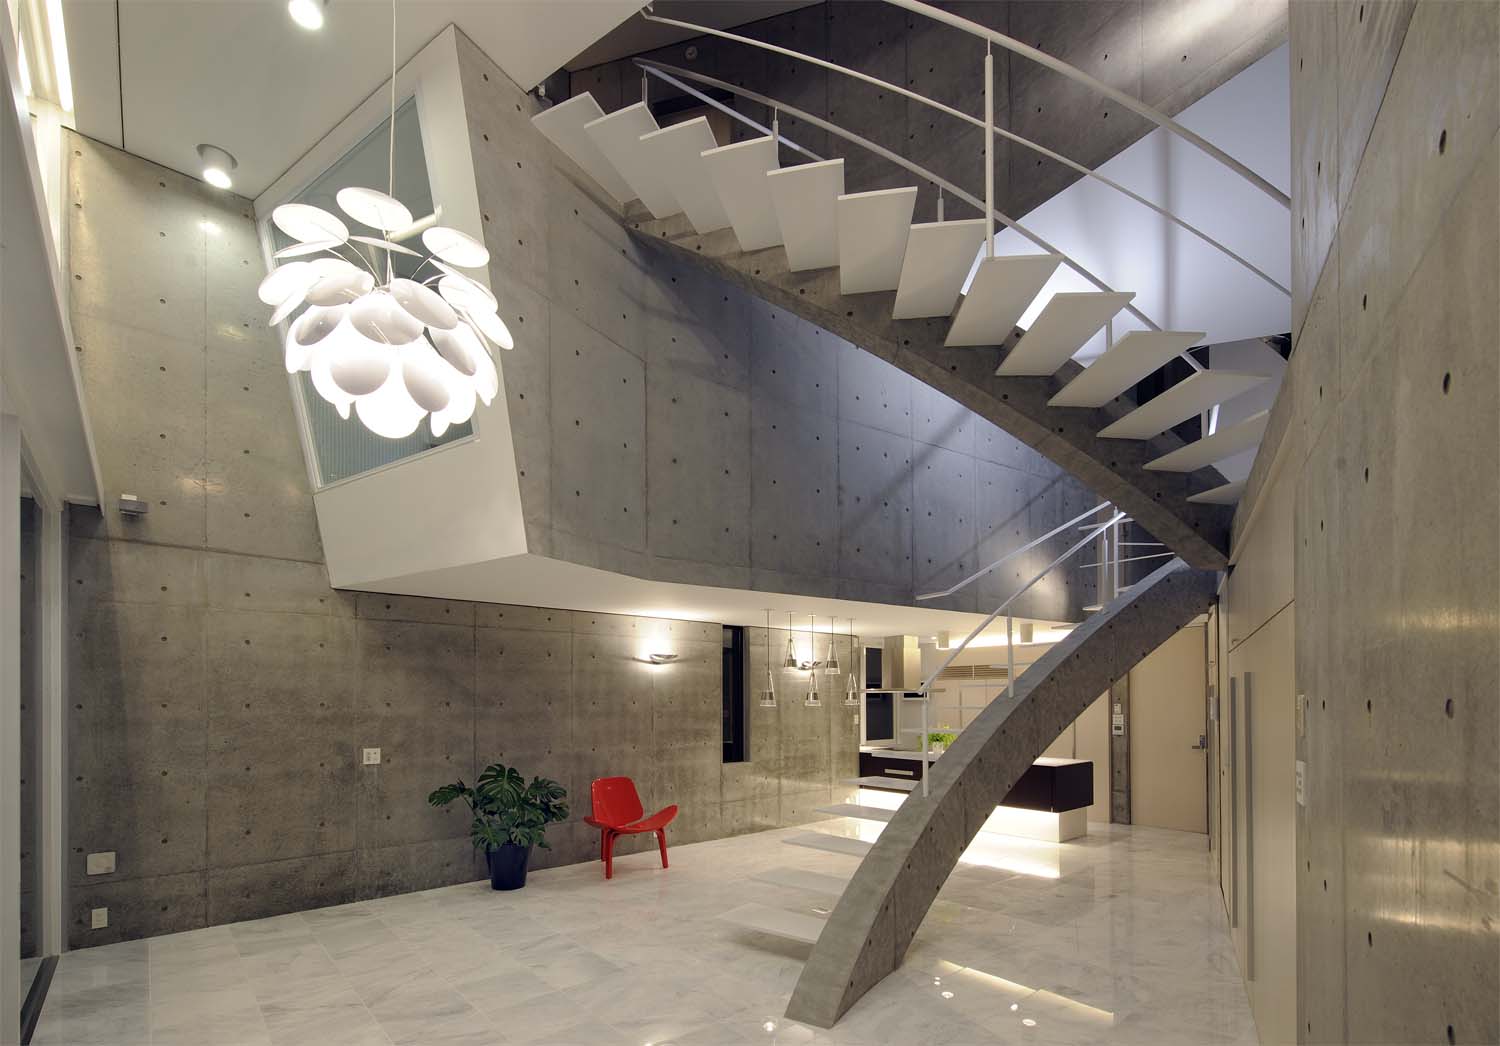 Atelier boronski представляет: увлекательная конфигурация пространства – вилла t house в пригороде киото